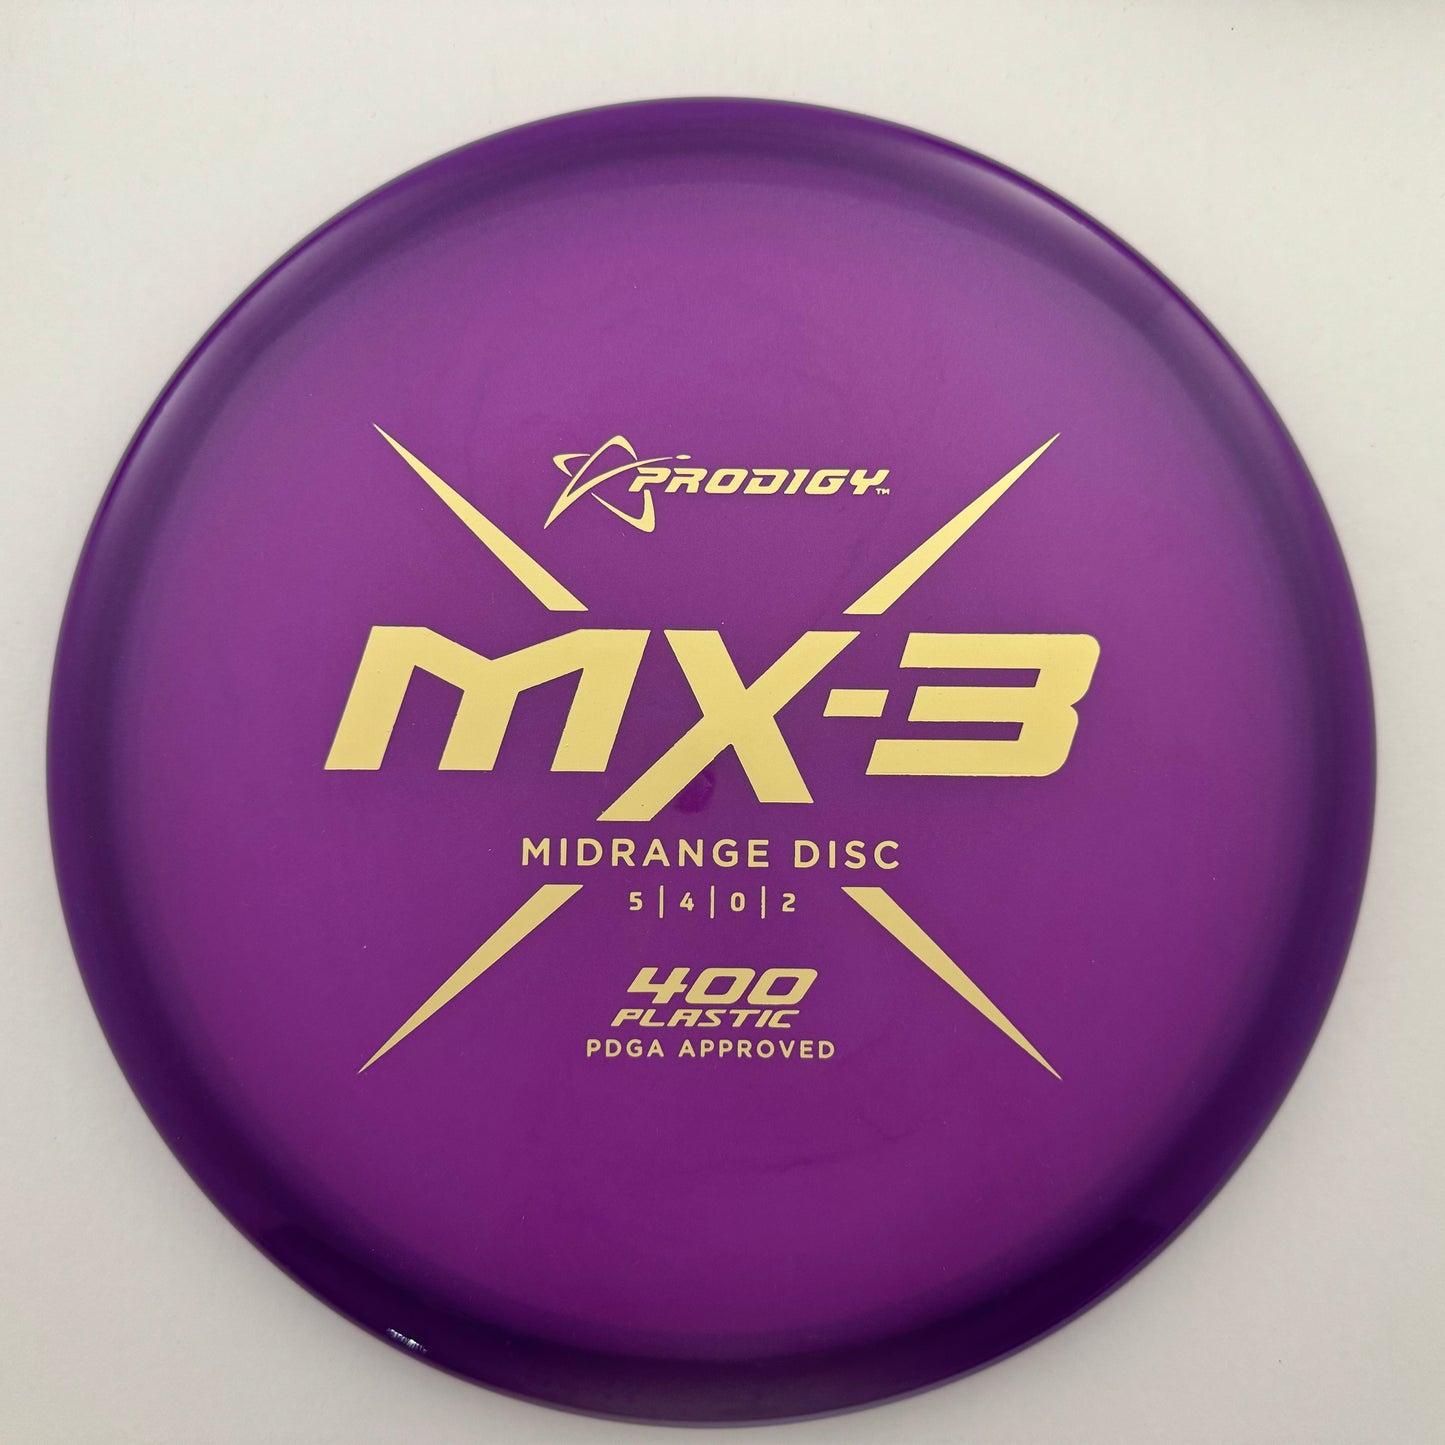 MX-3